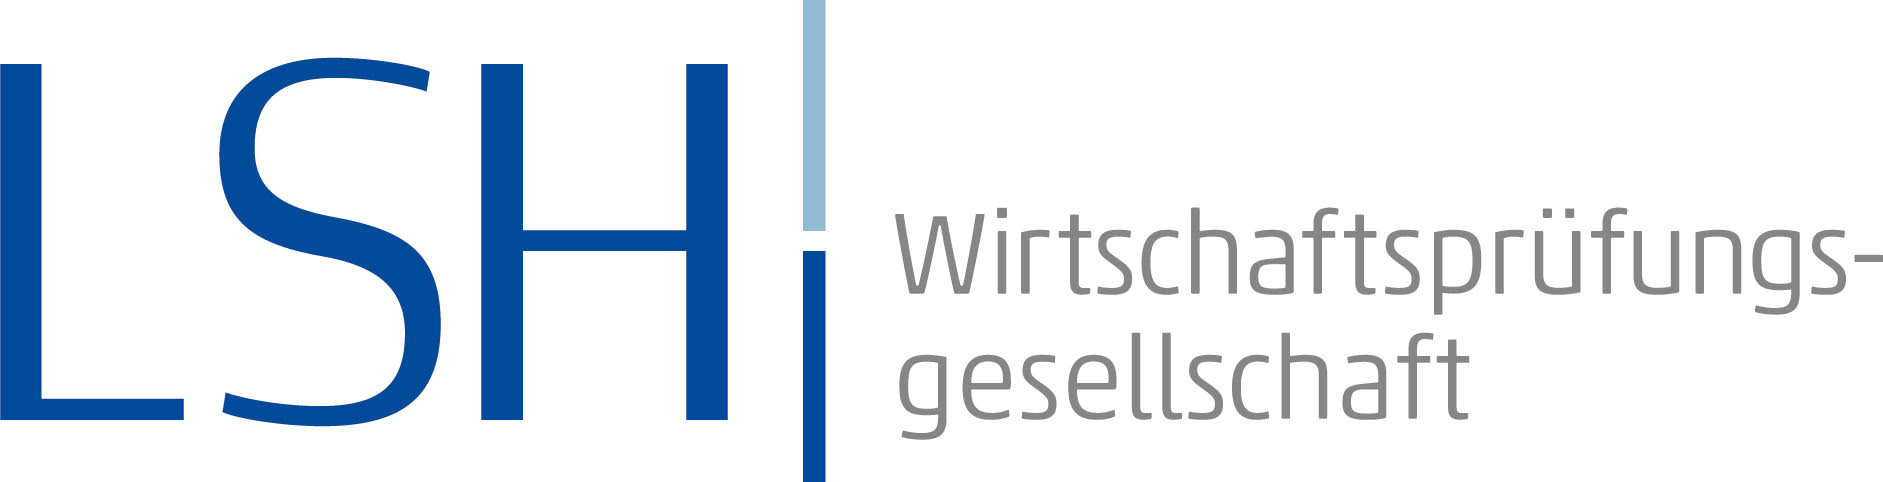 LSH GmbH Wirtschaftsprüfungsgesellschaft